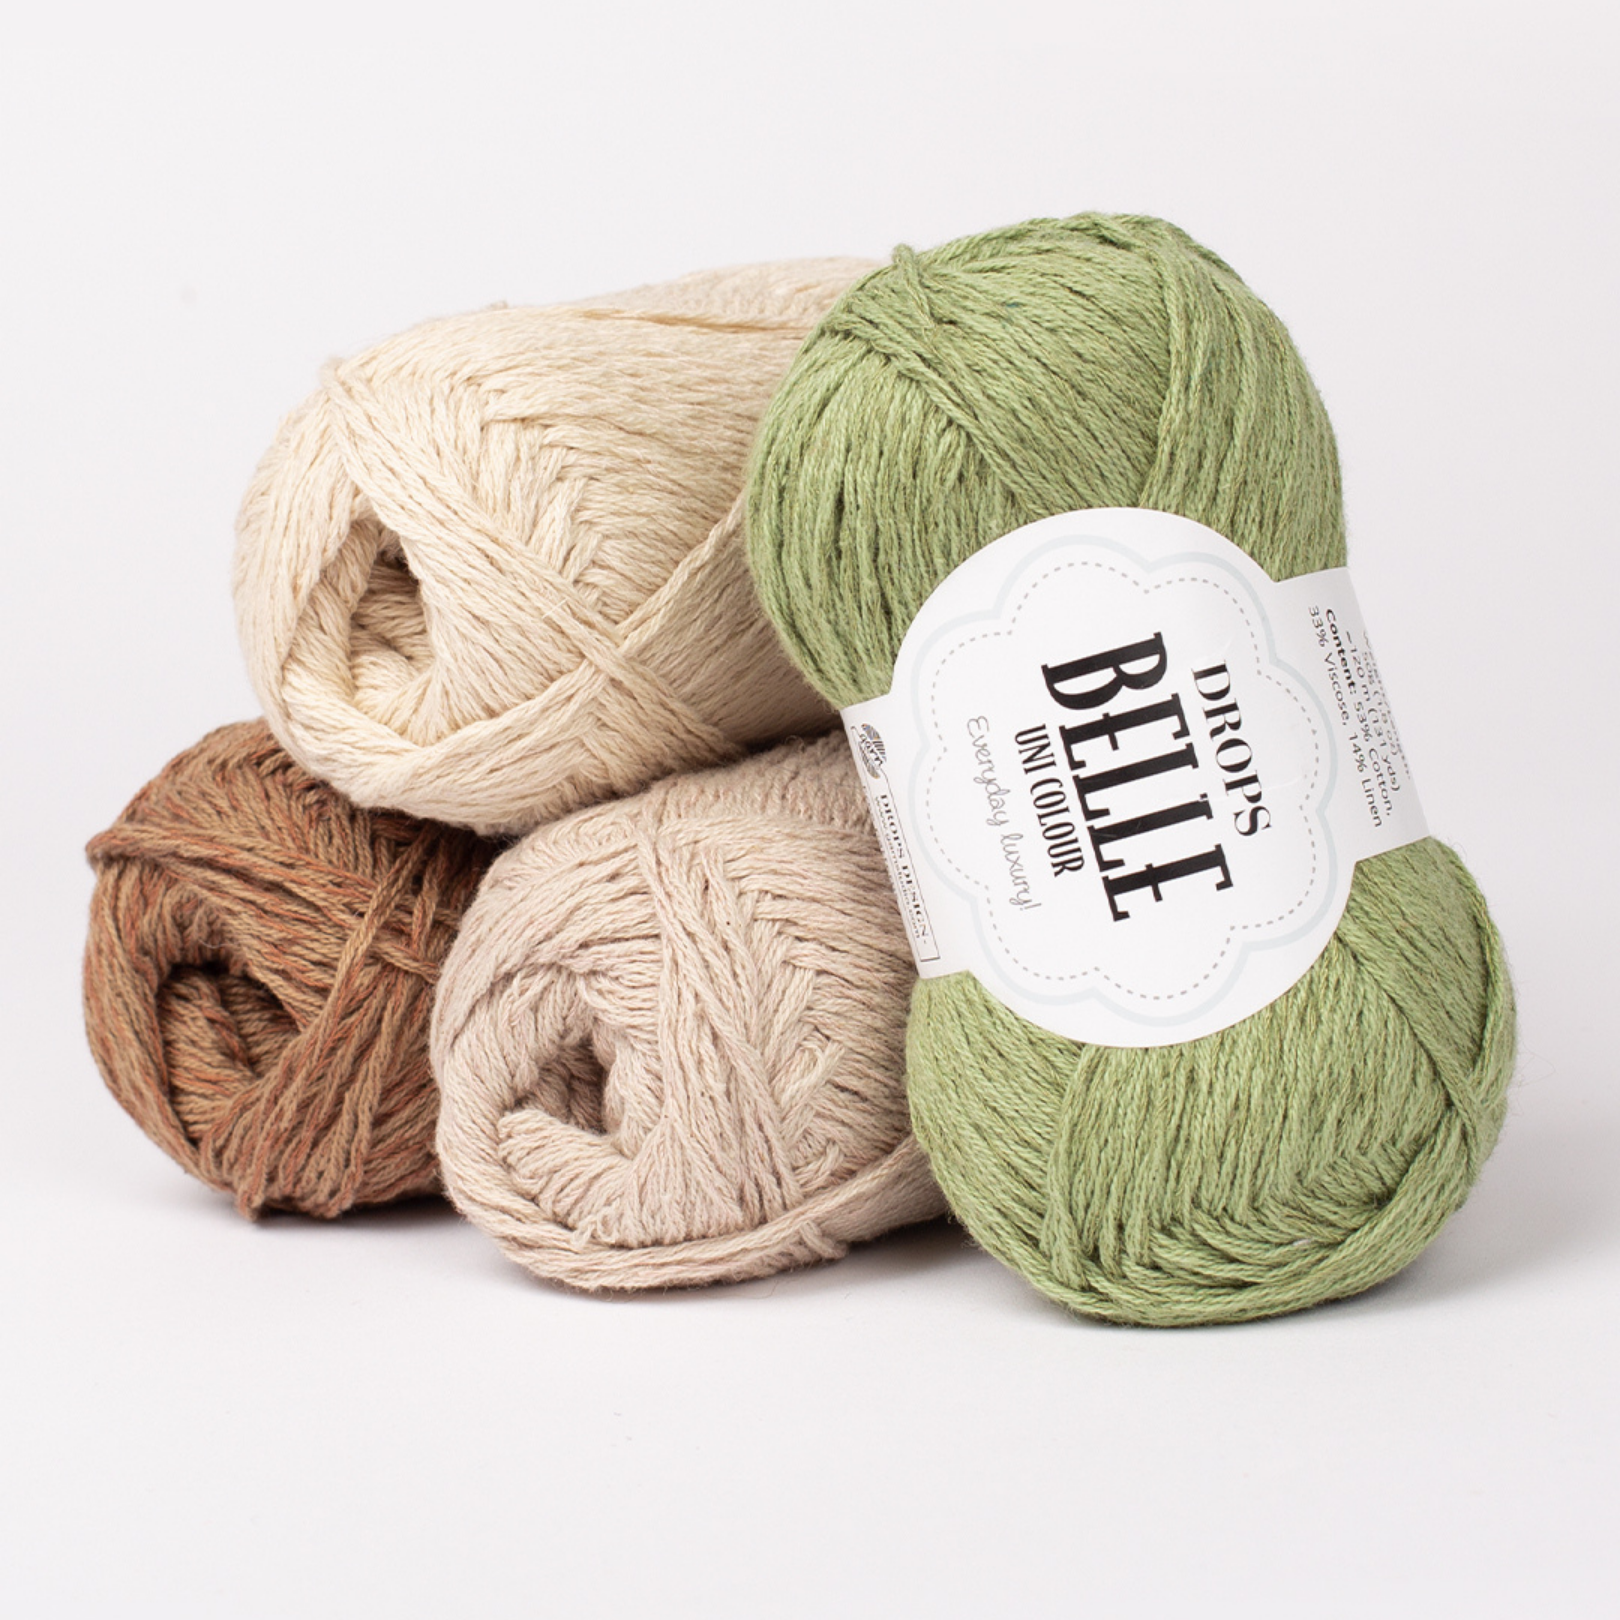 drops belle vasariniai siulai - Siulų dama - siūlai mezgėjoms megzti kojines megztinius šalikus šalikas megztinis siūlų parduotuvė pigiausi siūlai geriausi pasiūlymai nemokama registracija - Siūlų Dama Siūlų pasaulis https://siuludama.lt